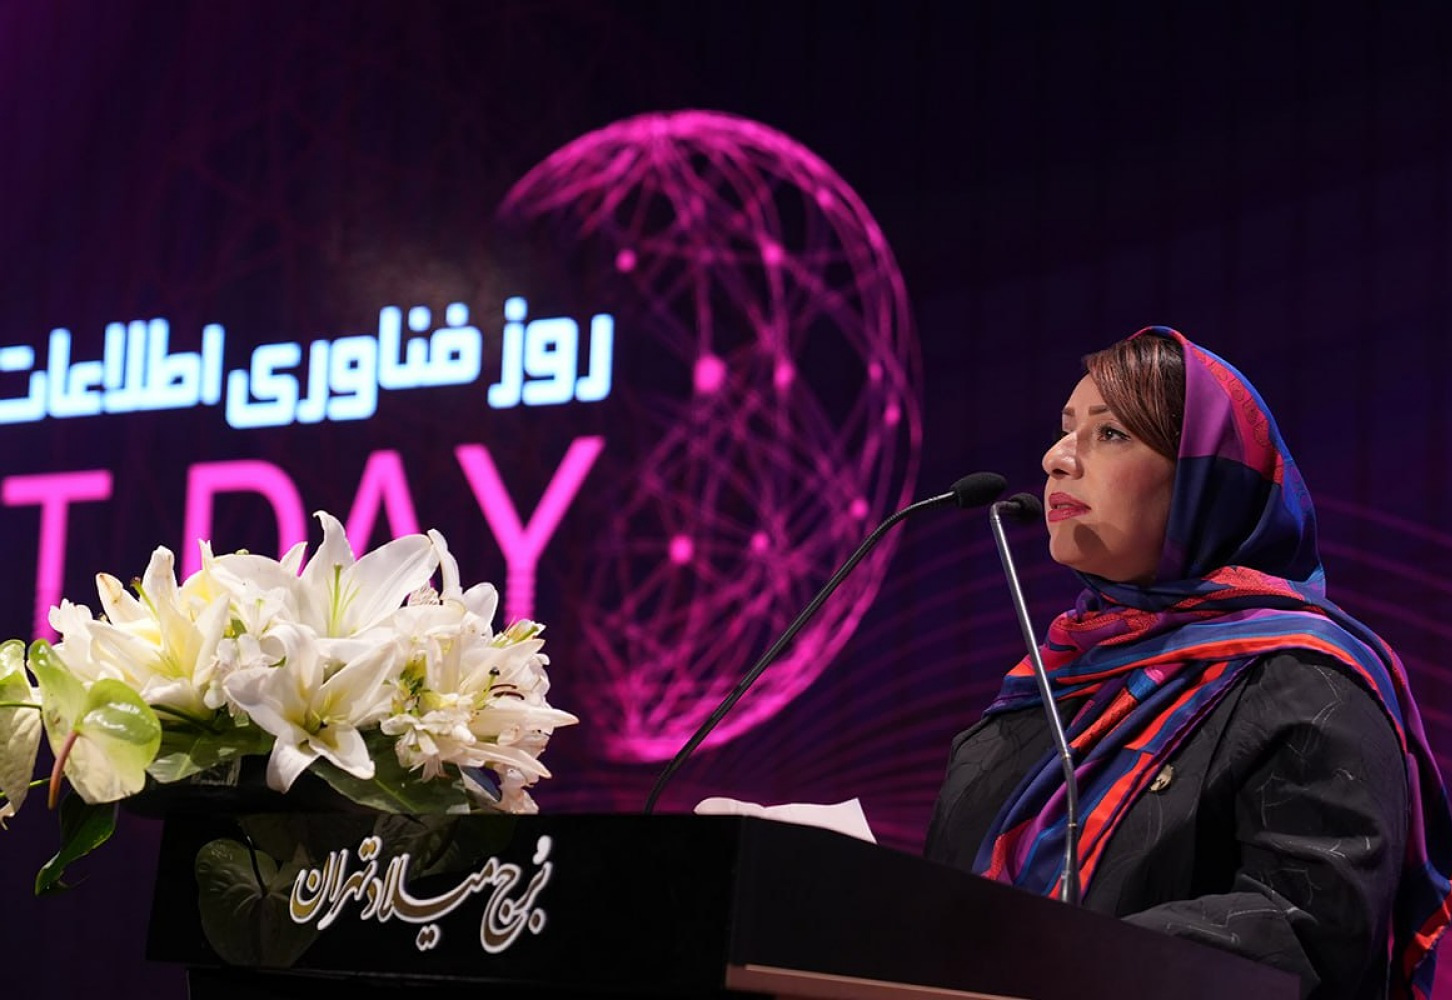 بهناز آریا، رئیس کمیسیون افتای نصر تهران در اختتامیه رویداد روز ملی فناوری اطلاعات